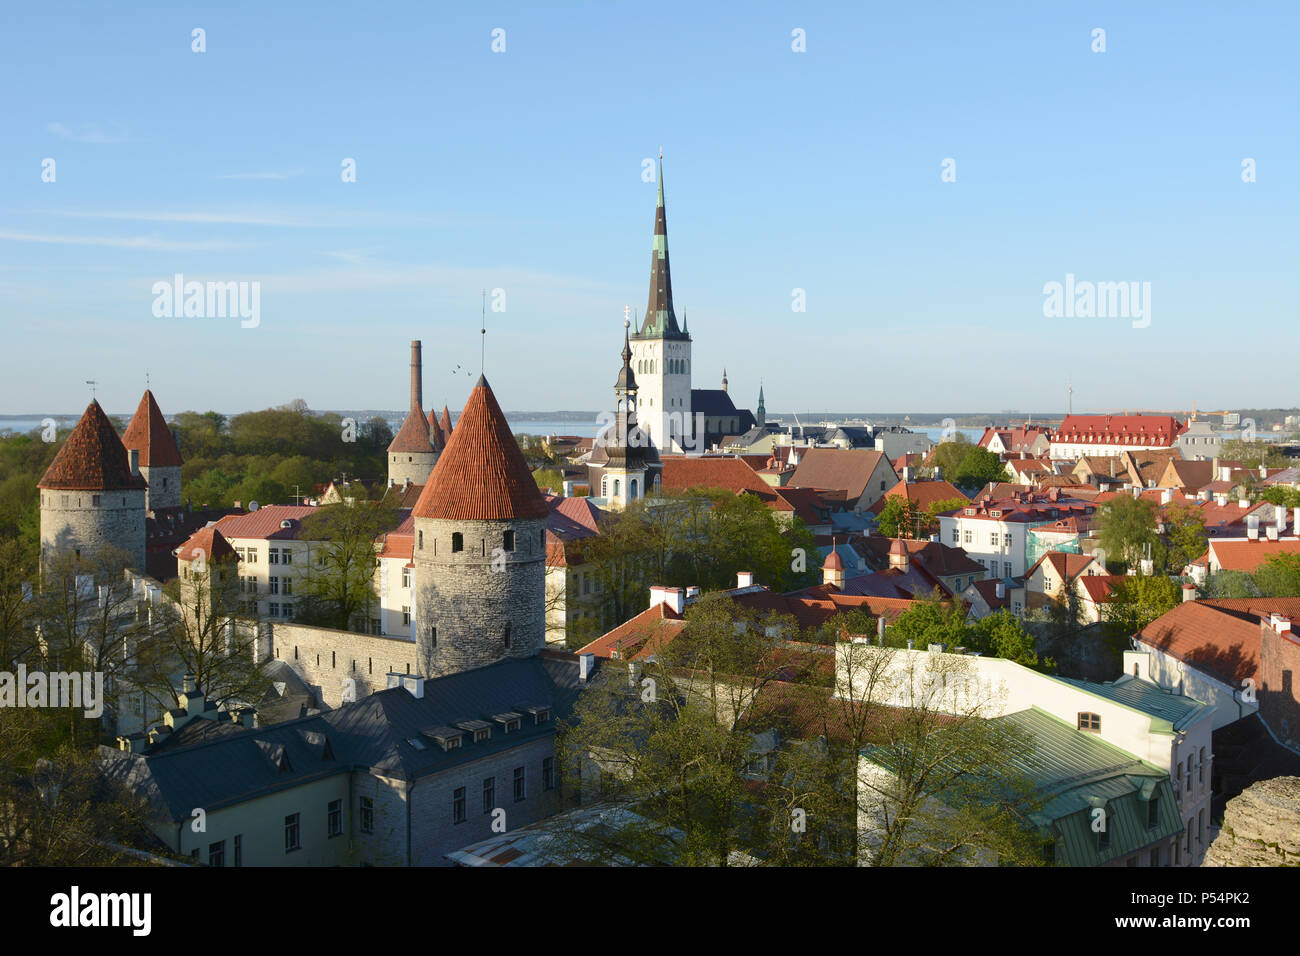 La ville de Tallinn, Estonie - site du patrimoine mondial de l'UNESCO - fortifications de la ville médiévale et de clochers, s'élever au-dessus des maisons Banque D'Images